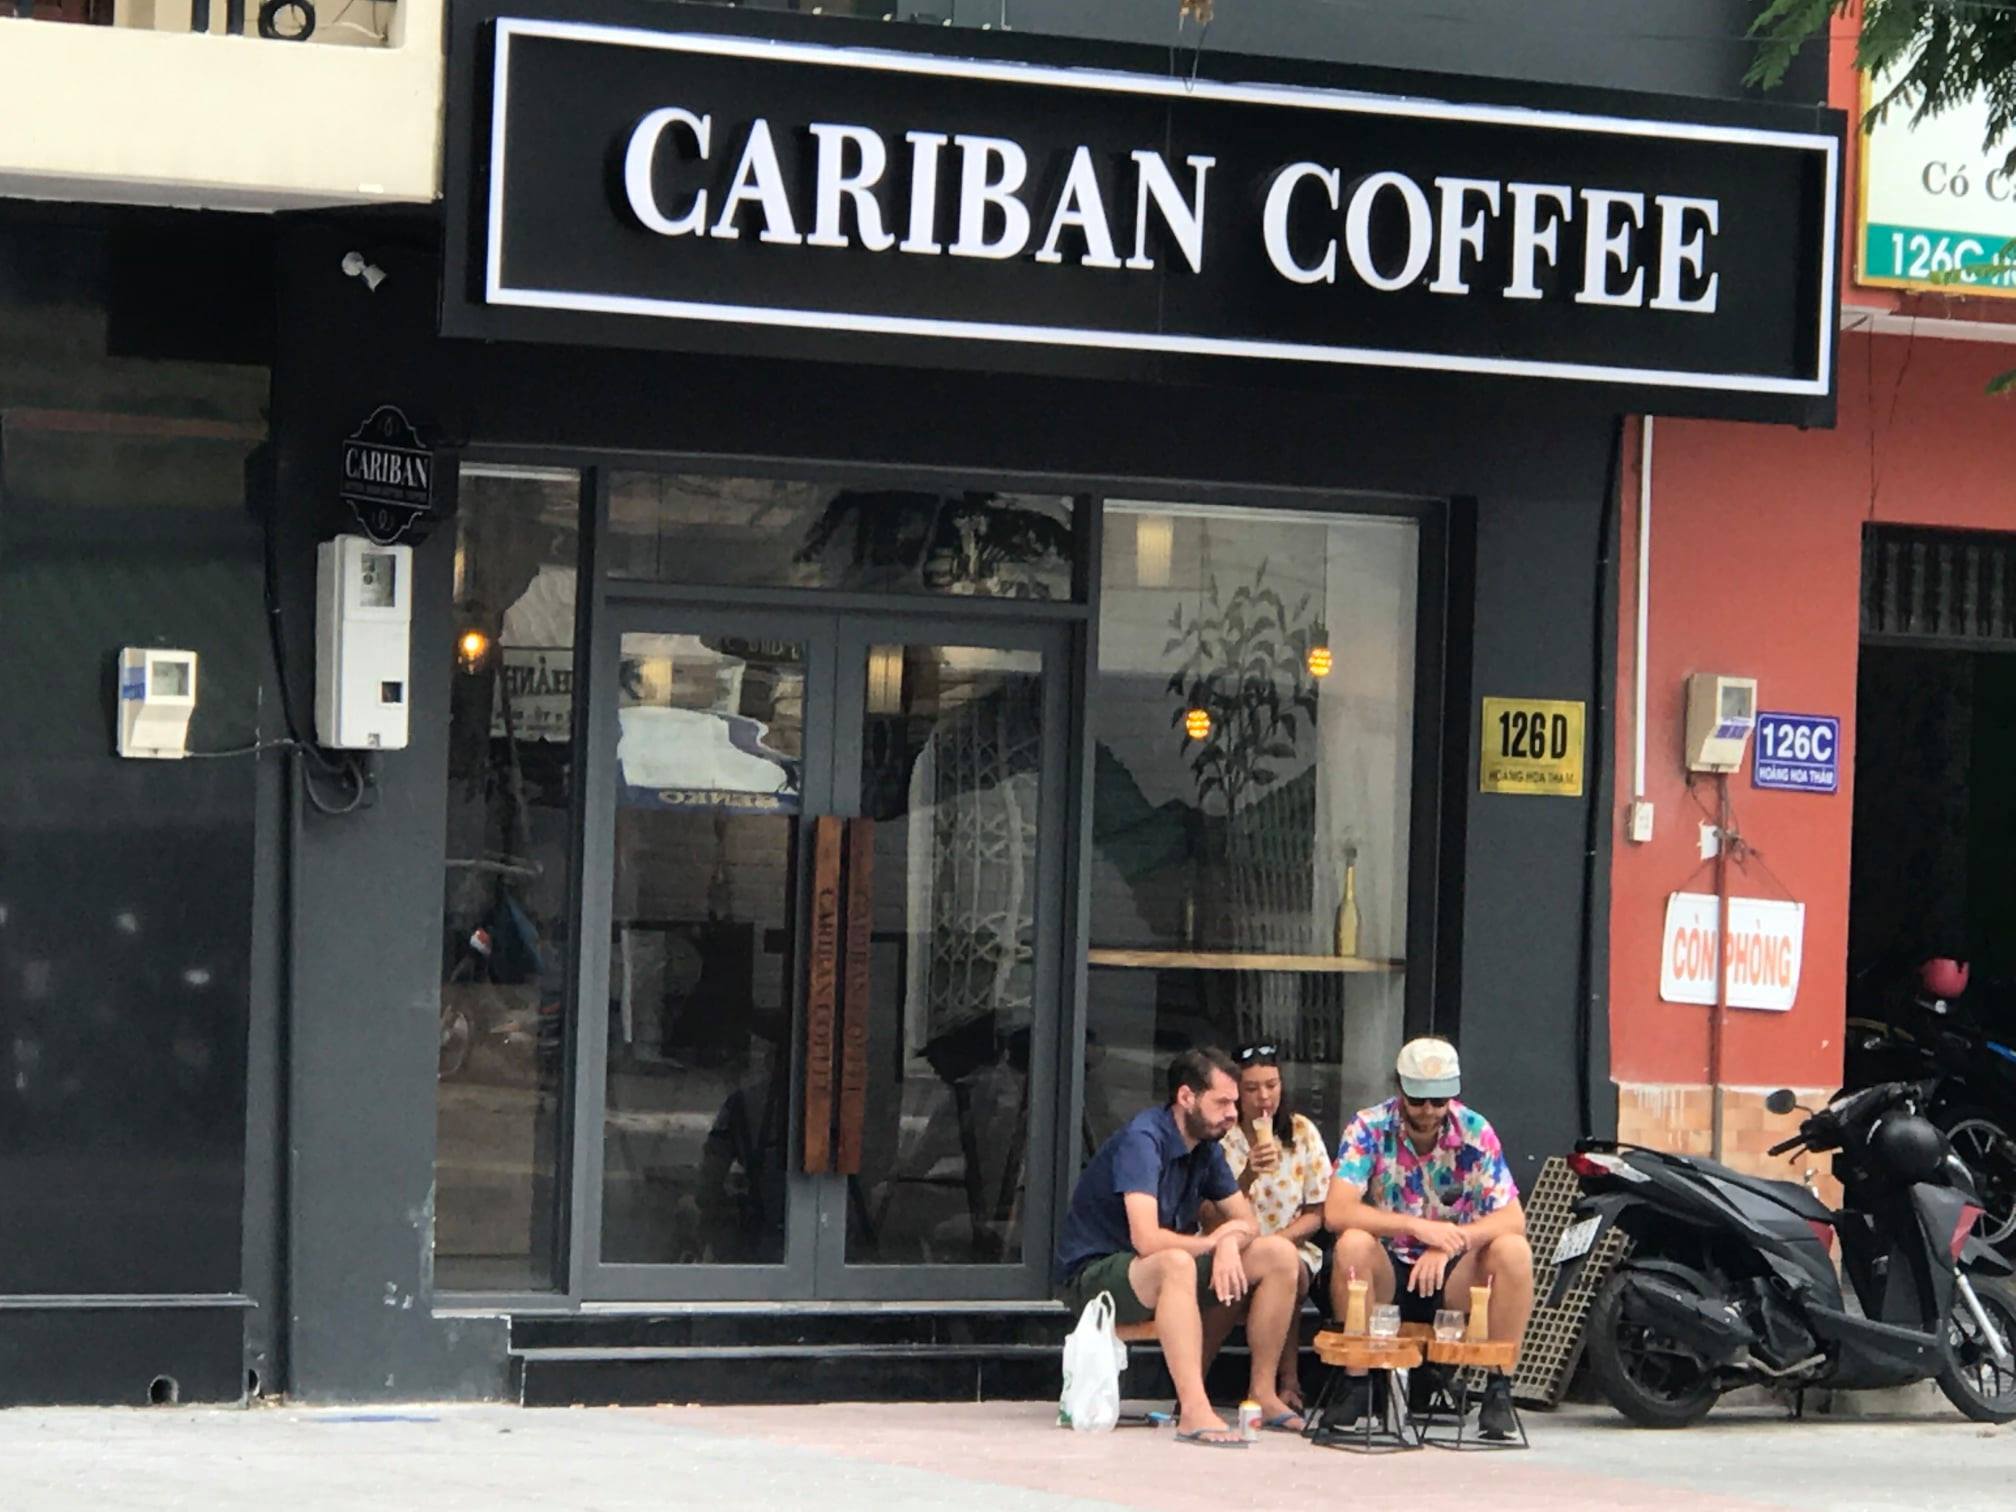 CÙNG CARIBAN COFFEE DẪN LỐI MỌI GIÁC QUAN VỚI HƯƠNG CÀ PHÊ SPECIALITY NGUYÊN BẢN